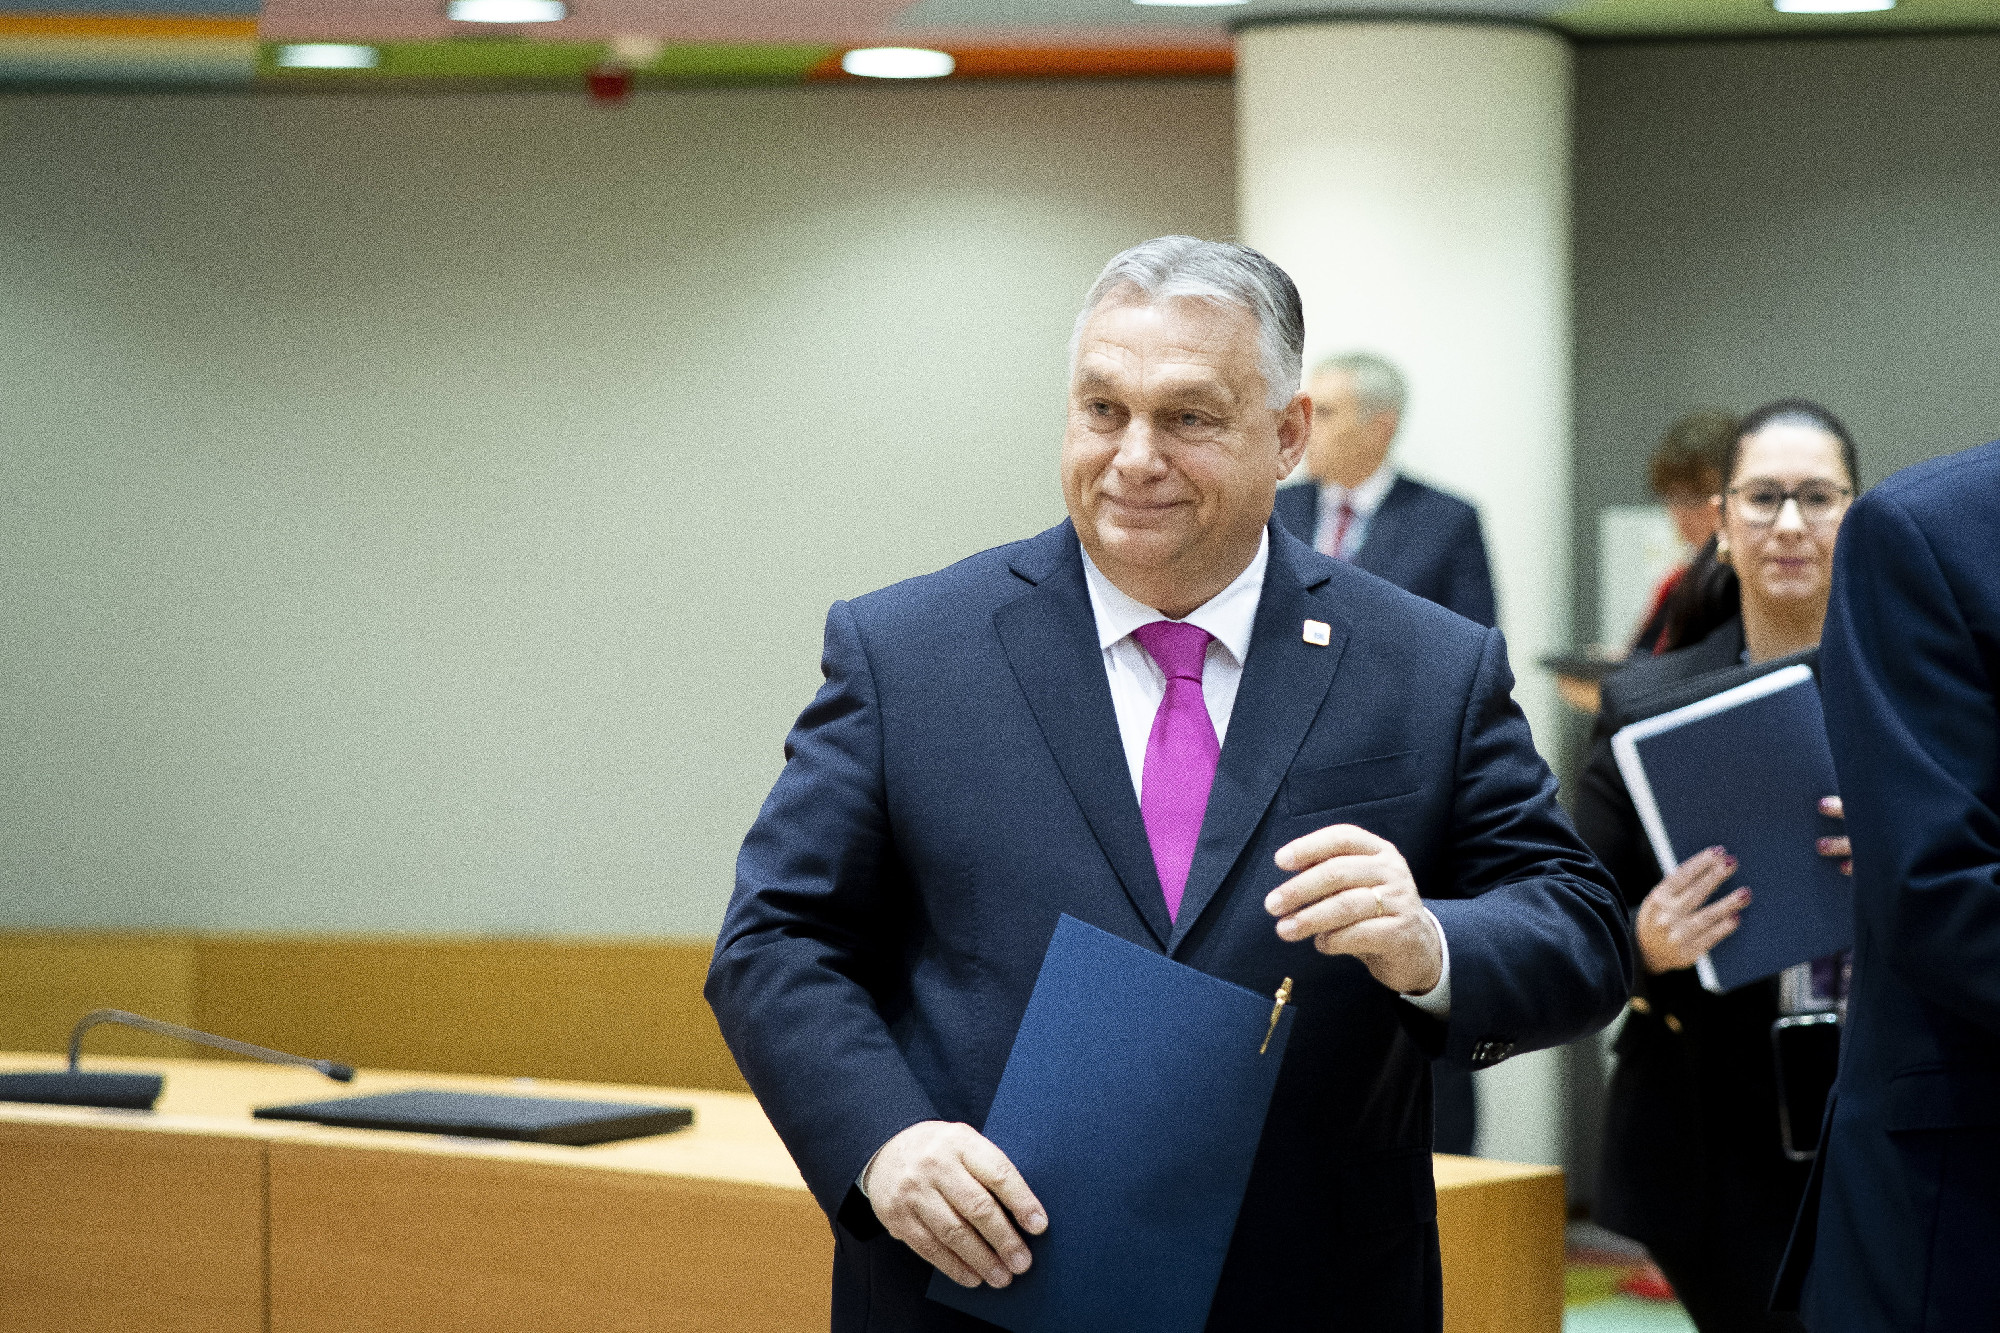 Az EU megkezdi Ukrajnával a csatlakozási tárgyalásokat, Orbán rossz döntésnek nevezte